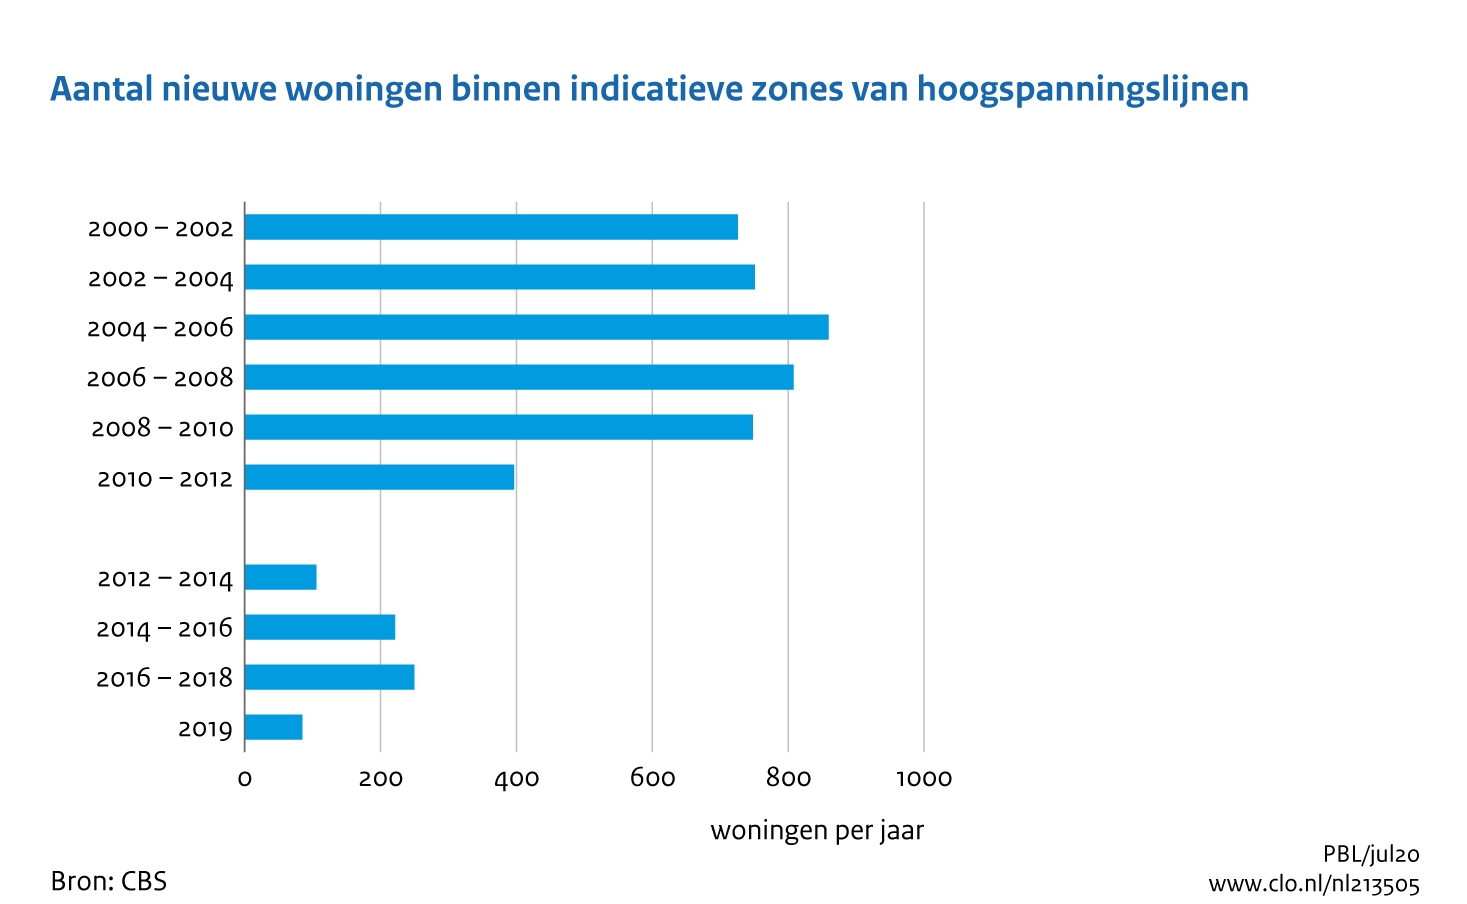 Figuur Aantal nieuwe woningen binnen indicatieve zones van hoogspanningslijnen, 2000-2019 . In de rest van de tekst wordt deze figuur uitgebreider uitgelegd.